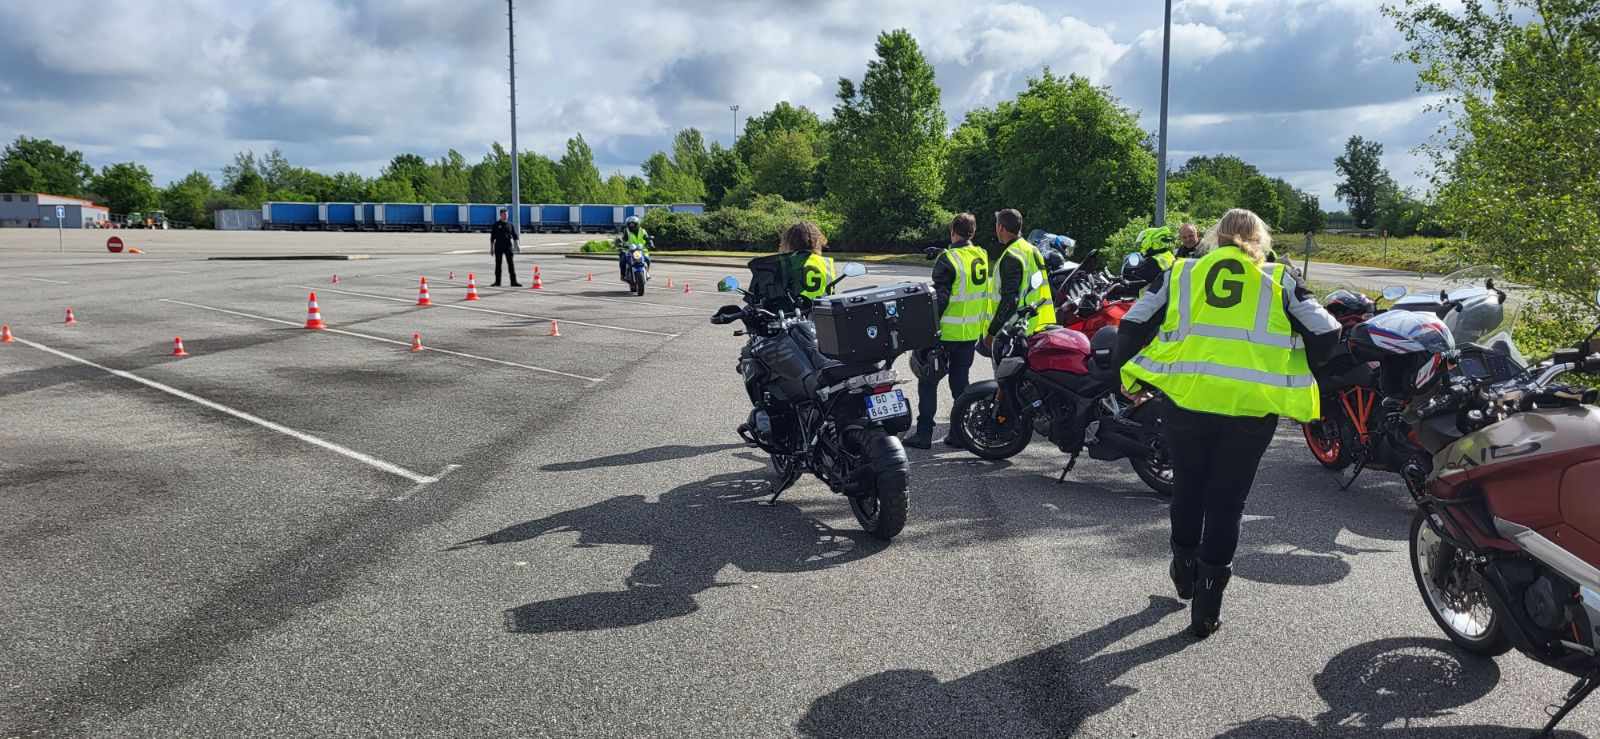 Journée moto trajectoire et sécurité du Tarn et Garonne